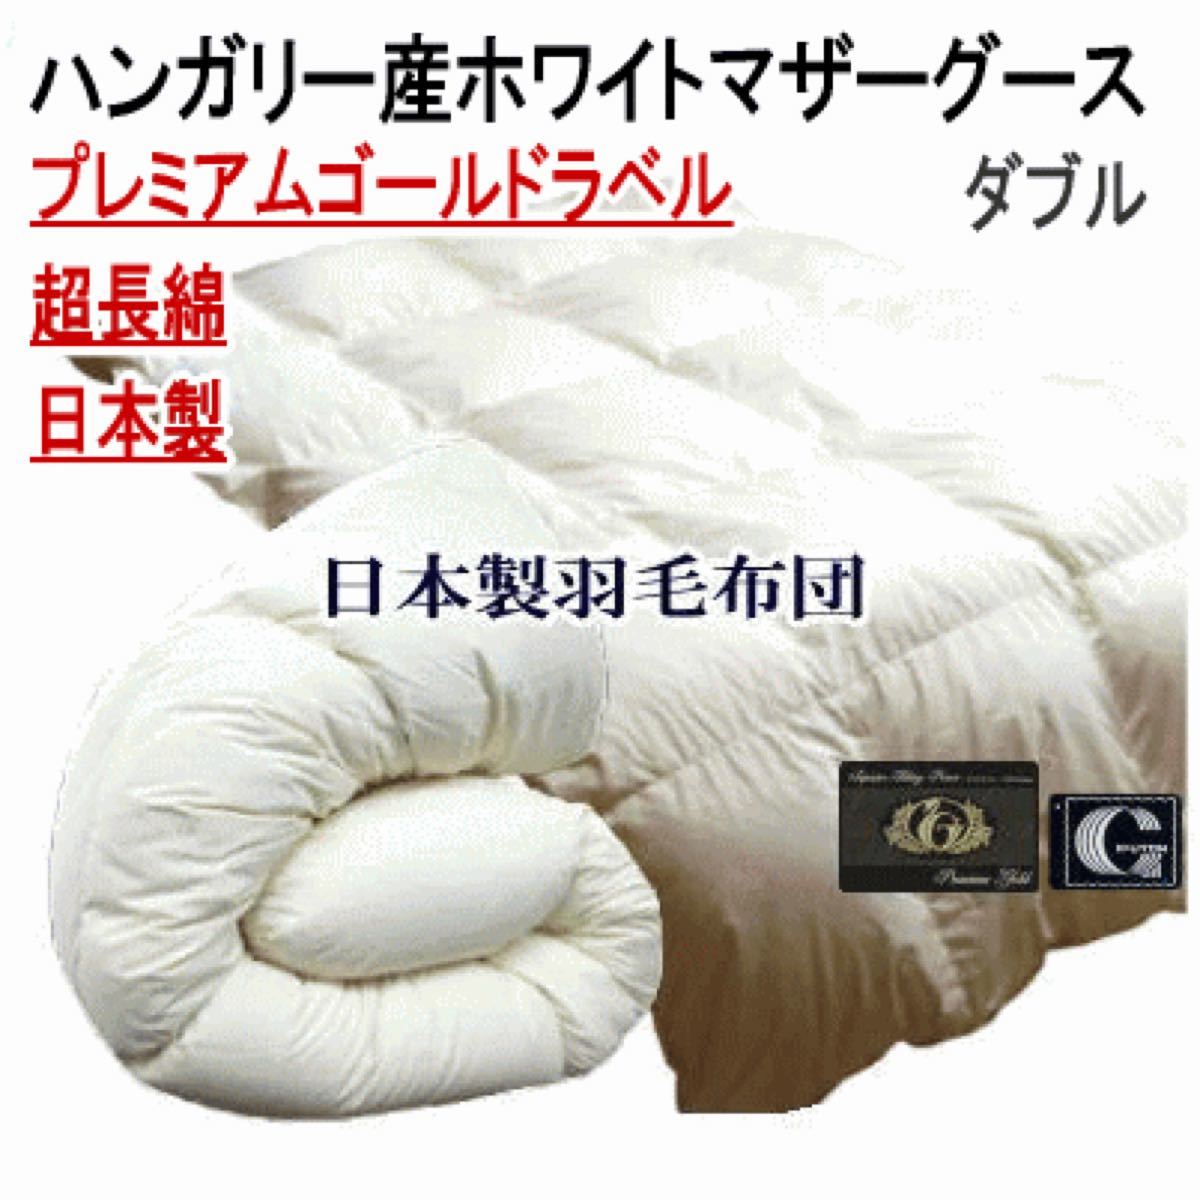 羽毛布団 ダブル ハンガリー産ホワイトマザーグース プレミアムゴールドラベル 日本製 超長綿 生成り